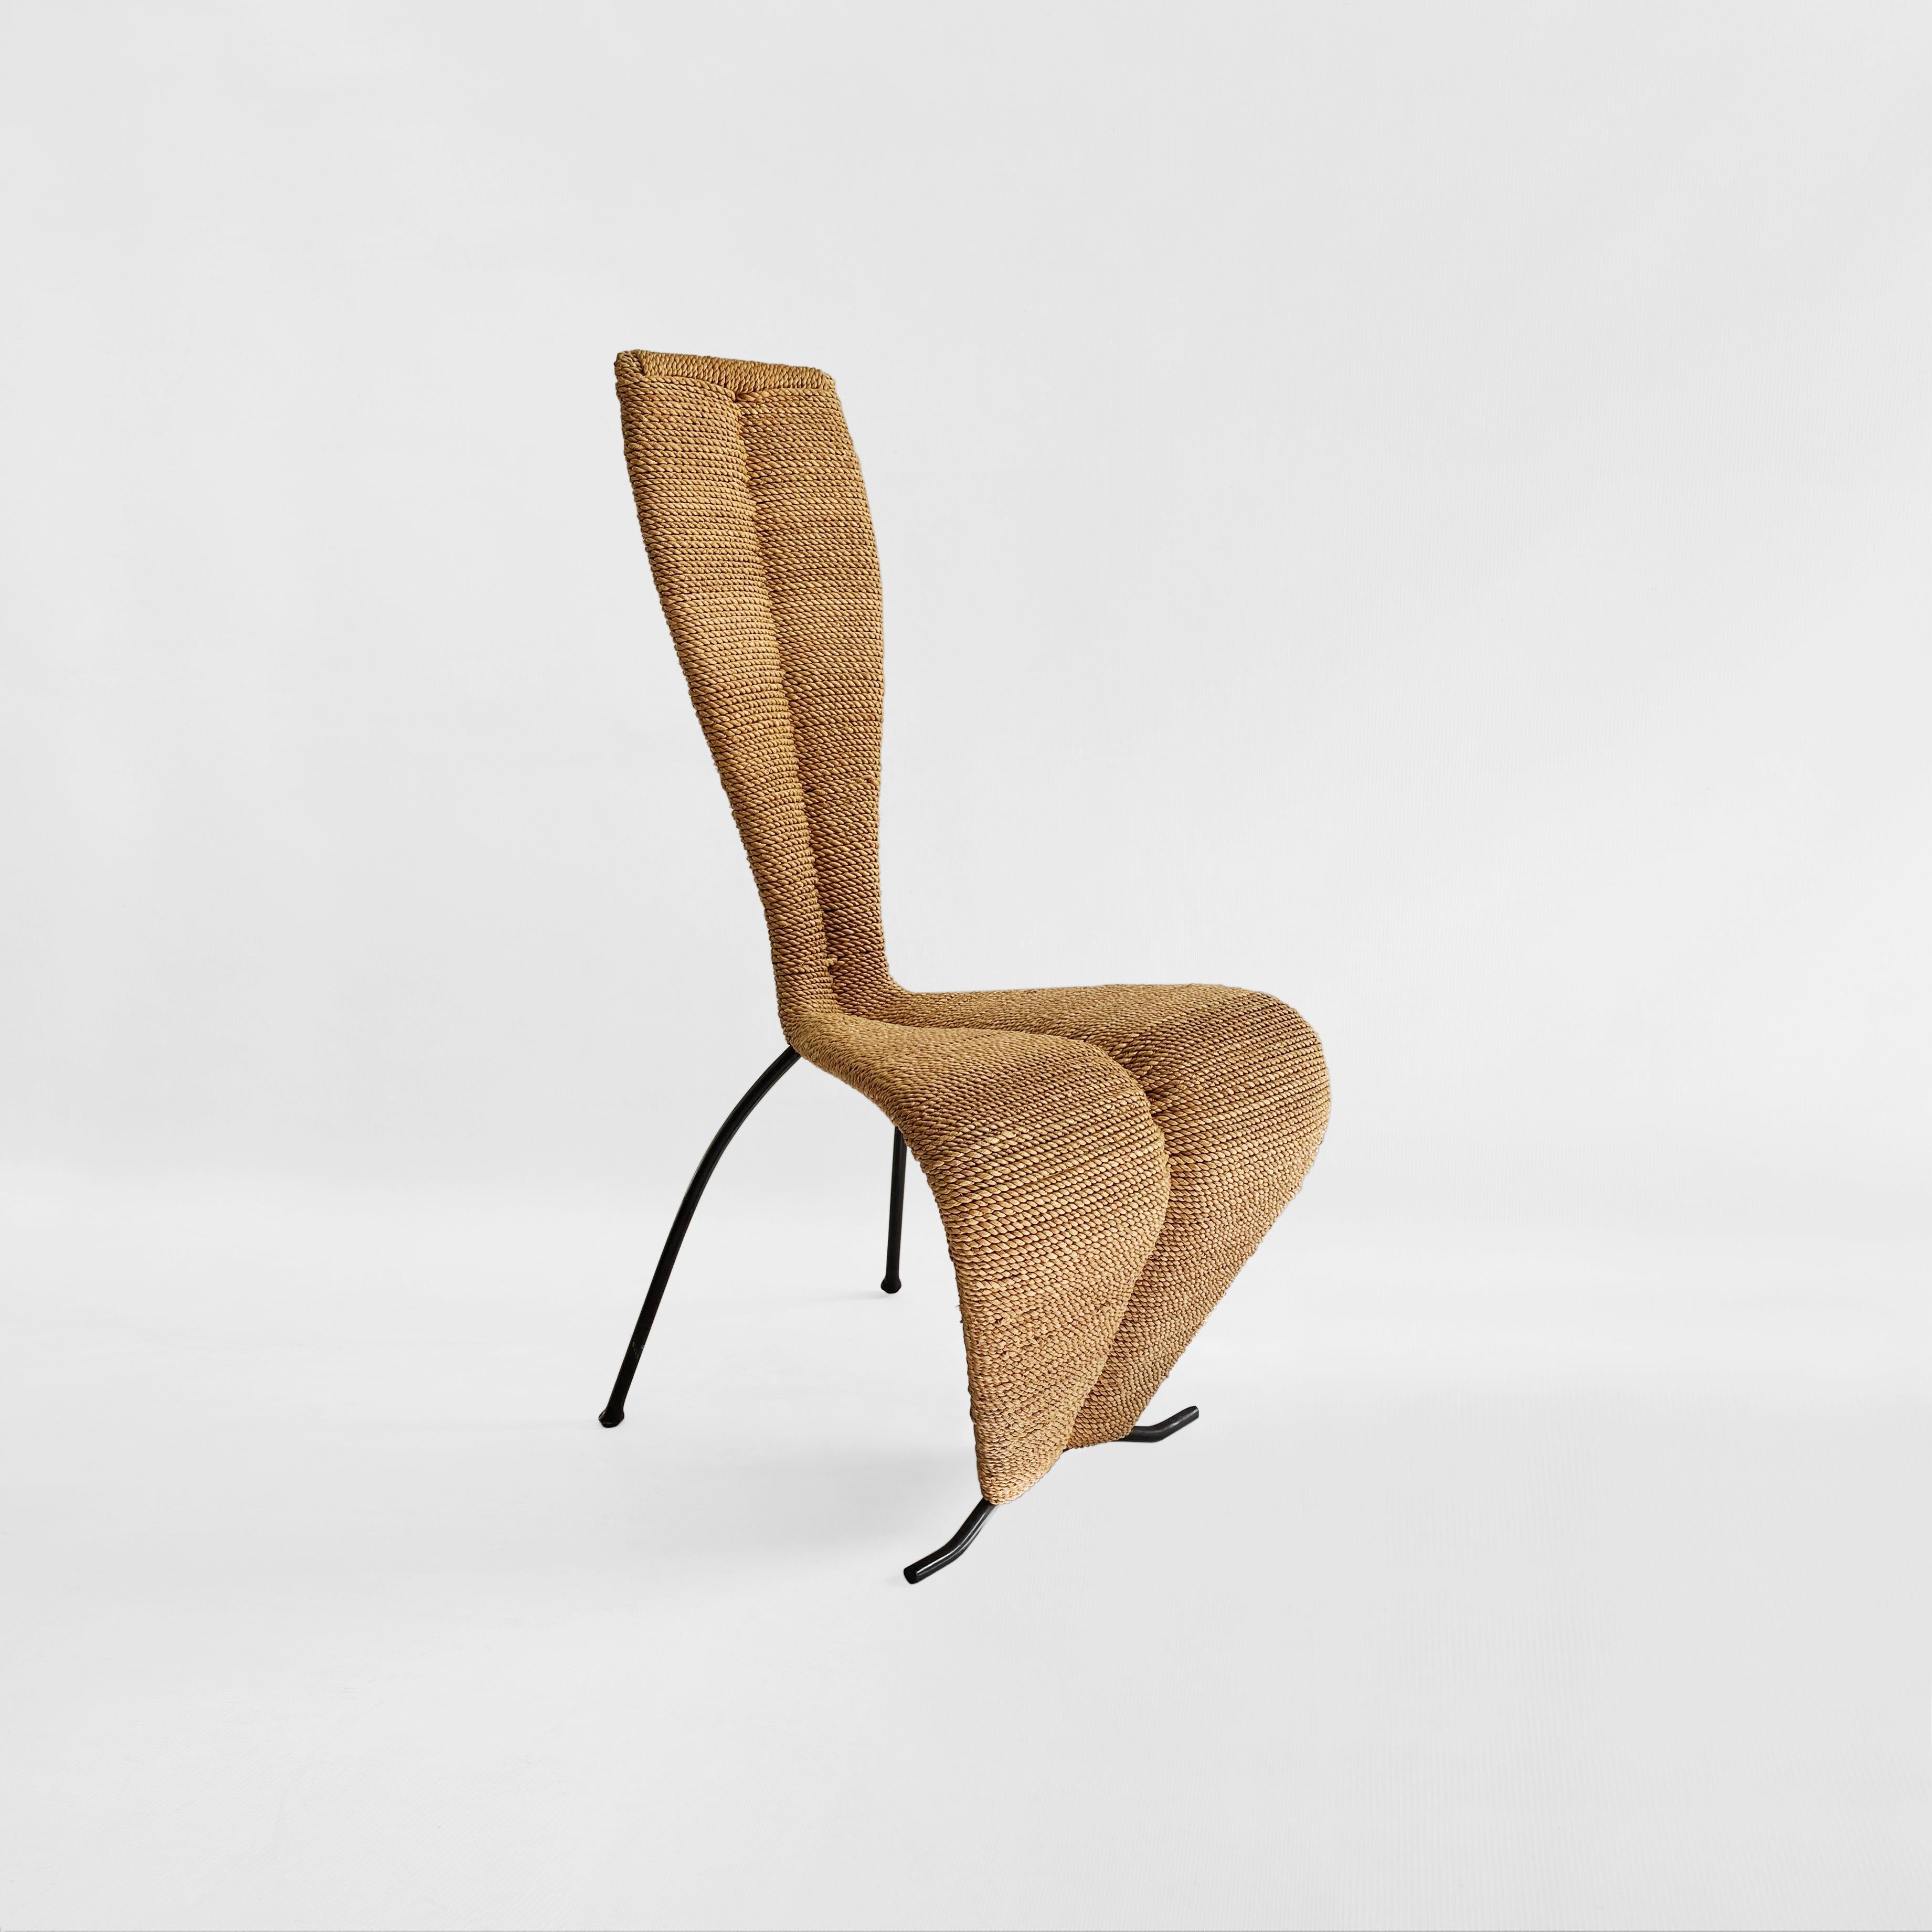 Une étonnante chaise en corde en forme de sablier conçue d'après la célèbre chaise 